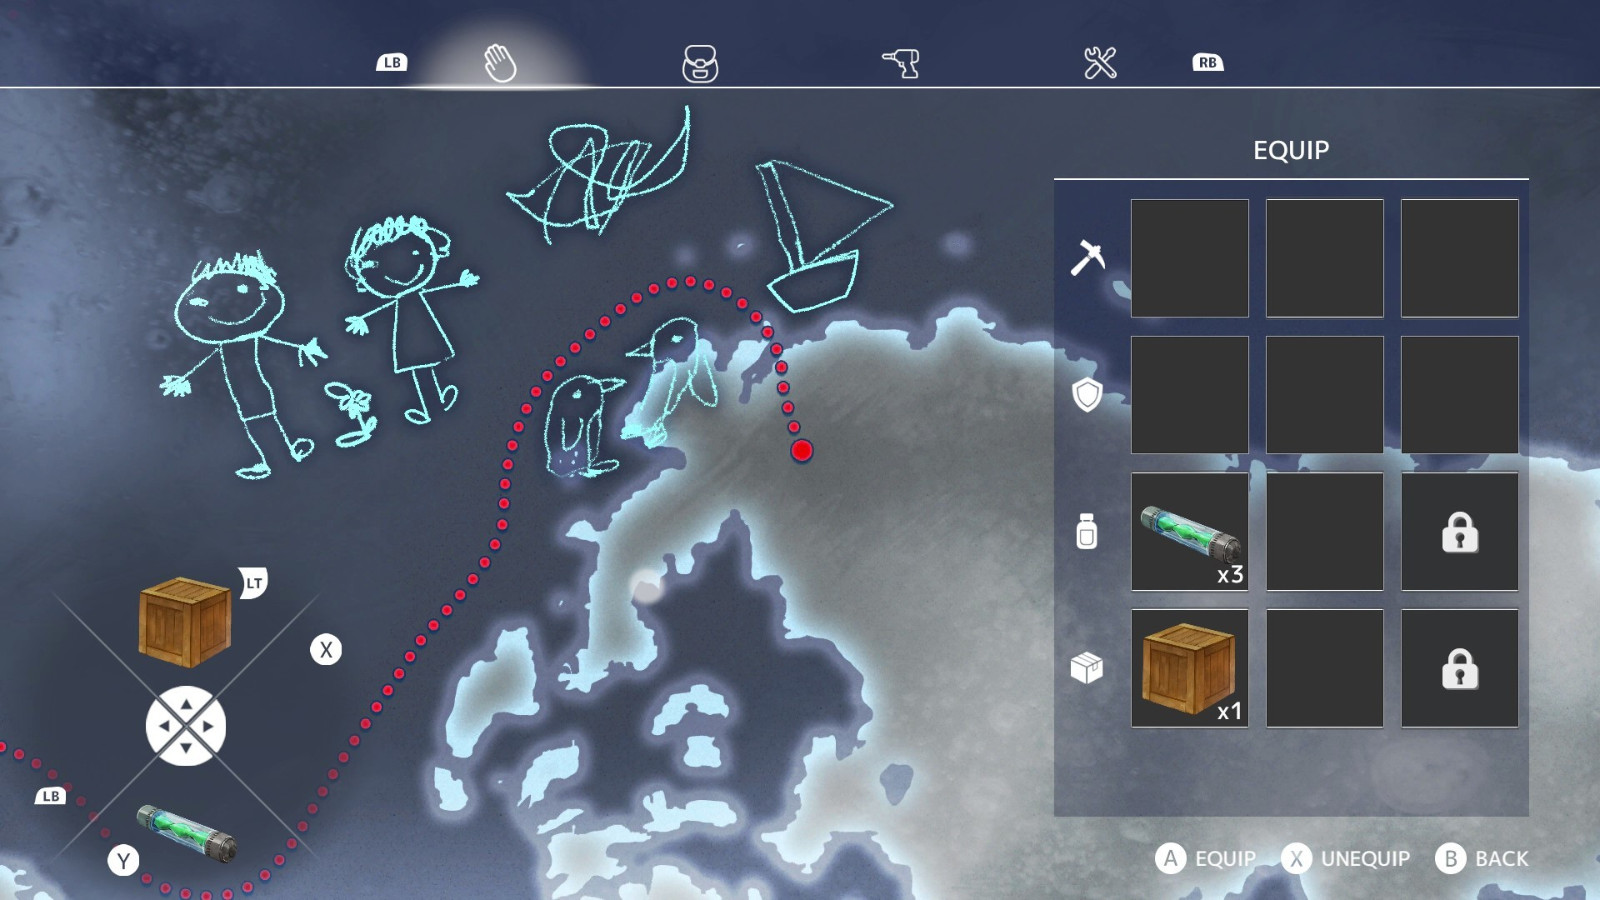 冒险RPG游戏《Nova Antarctica》Steam页面上线 支持简体中文